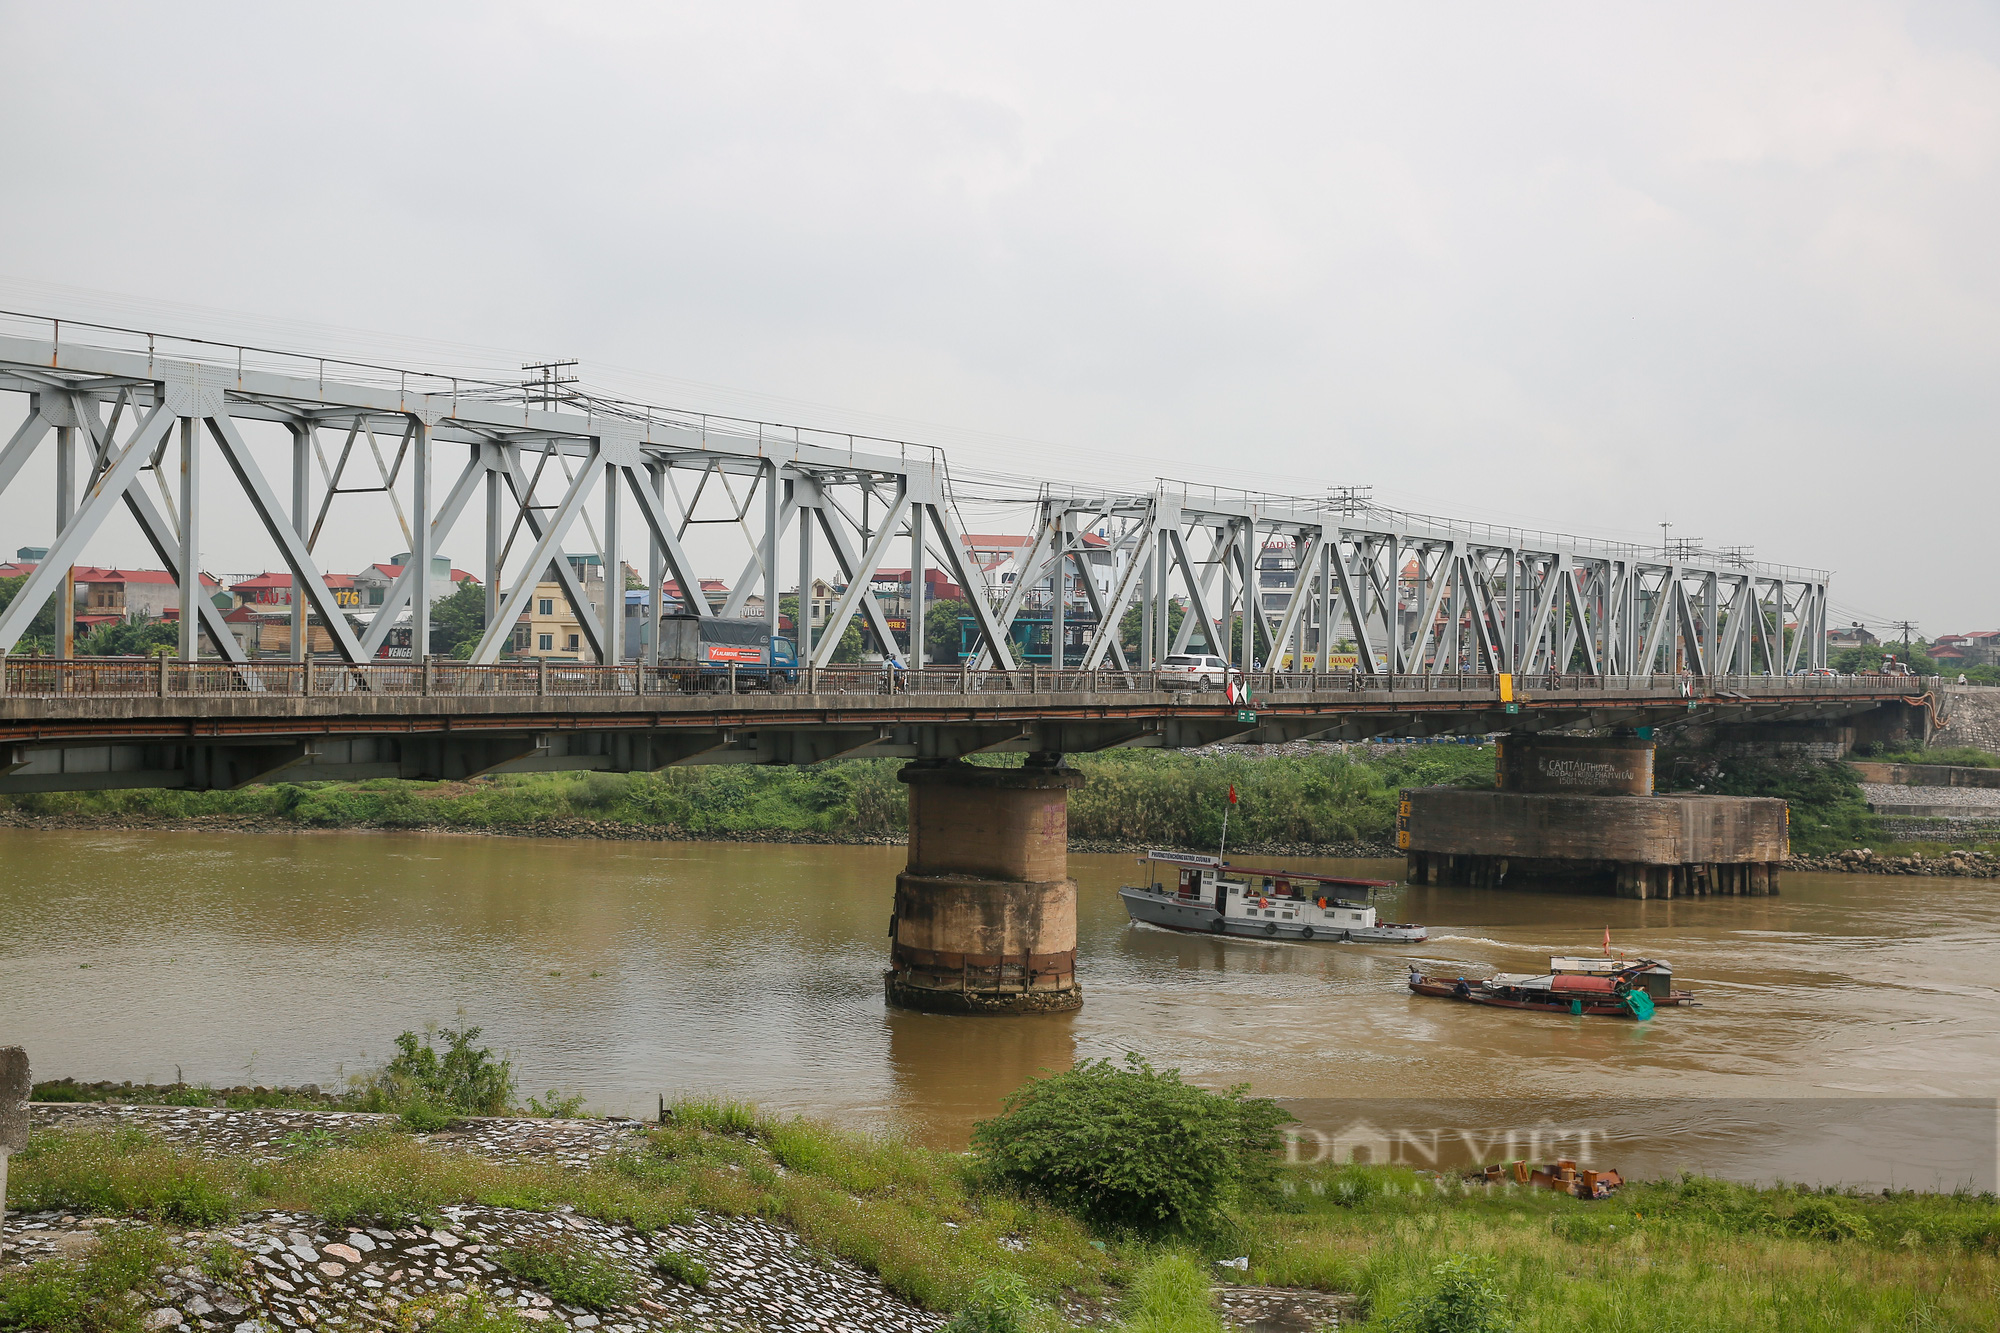 Hà Nội: Cận cảnh cây cầu xuống cấp nghiêm trọng được đề xuất xây mới trị giá gần 1800 tỷ đồng - Ảnh 1.